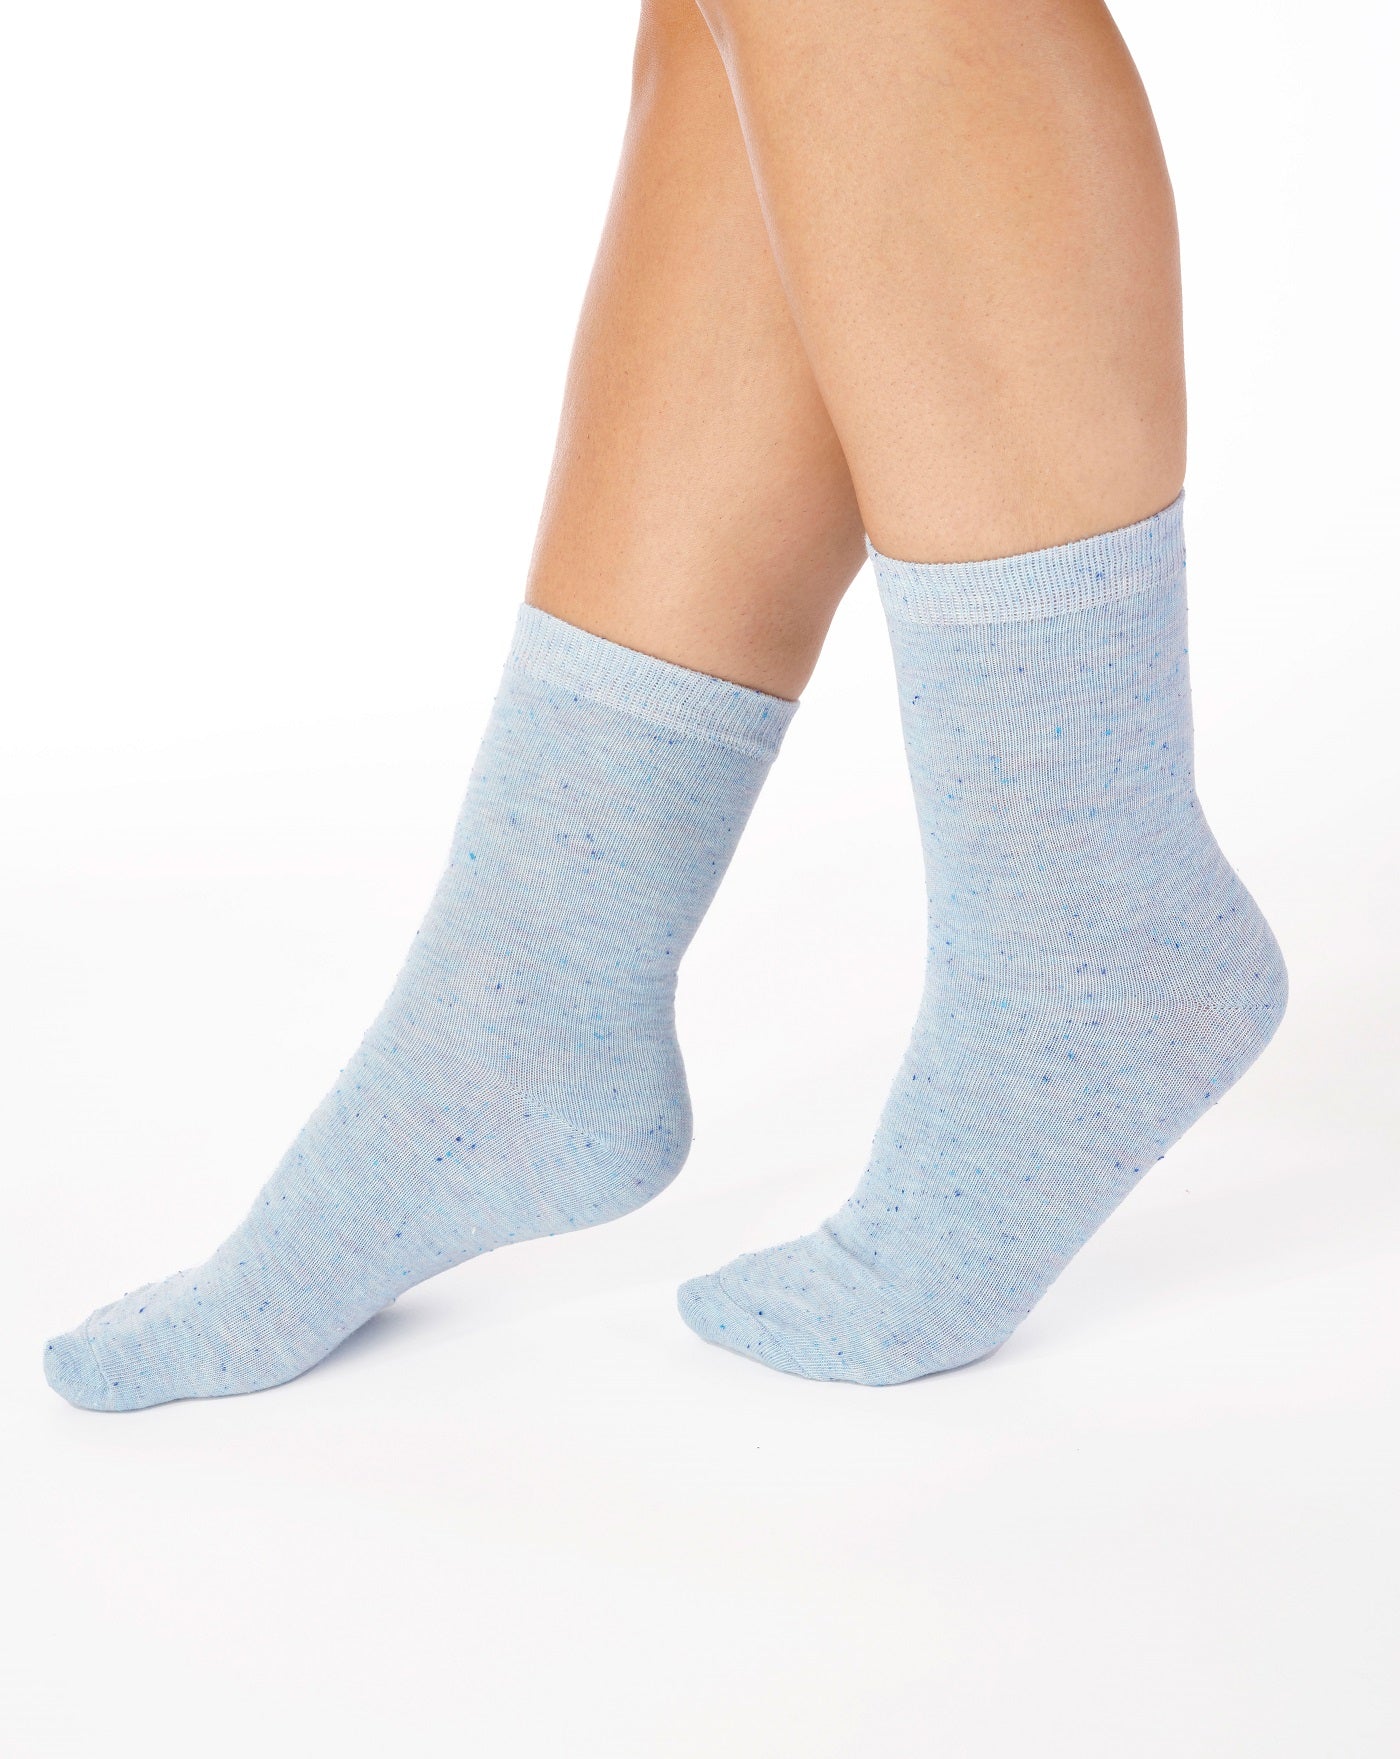 Marl Effect Leisure Sock (2 Pair Pack) LS185